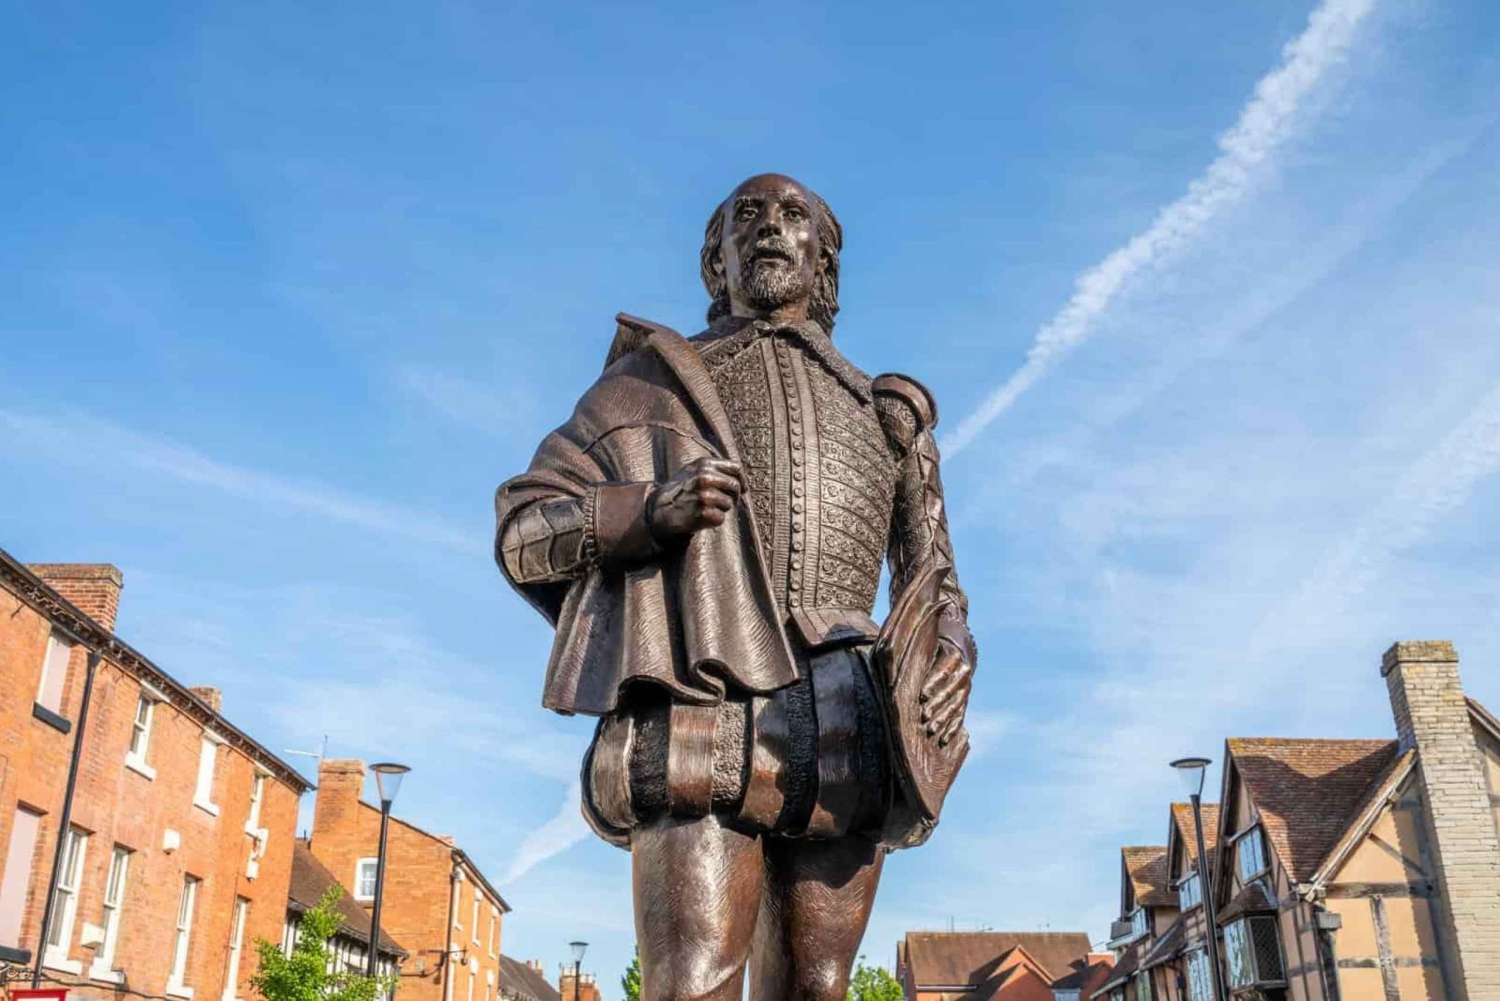 Starford-Upon-Avon: excursão histórica ao local de nascimento de Shakespeare